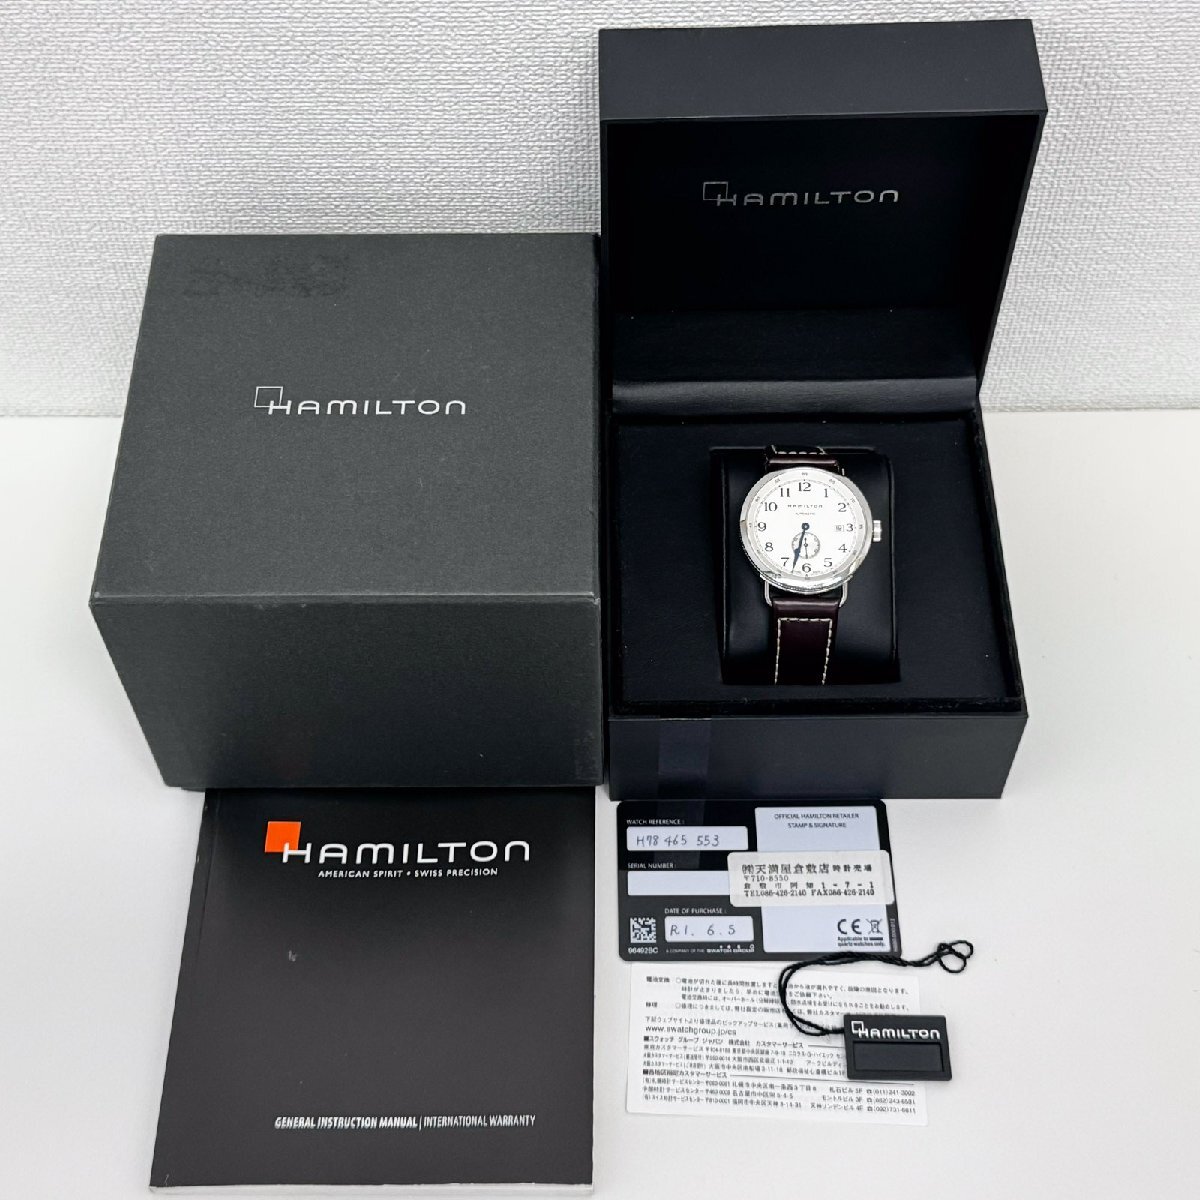 ハミルトン HAMILTON 腕時計 カーキ ネイビー パイオニア H78465553 メンズ 自動巻 中古 美品 [質イコー]_画像10